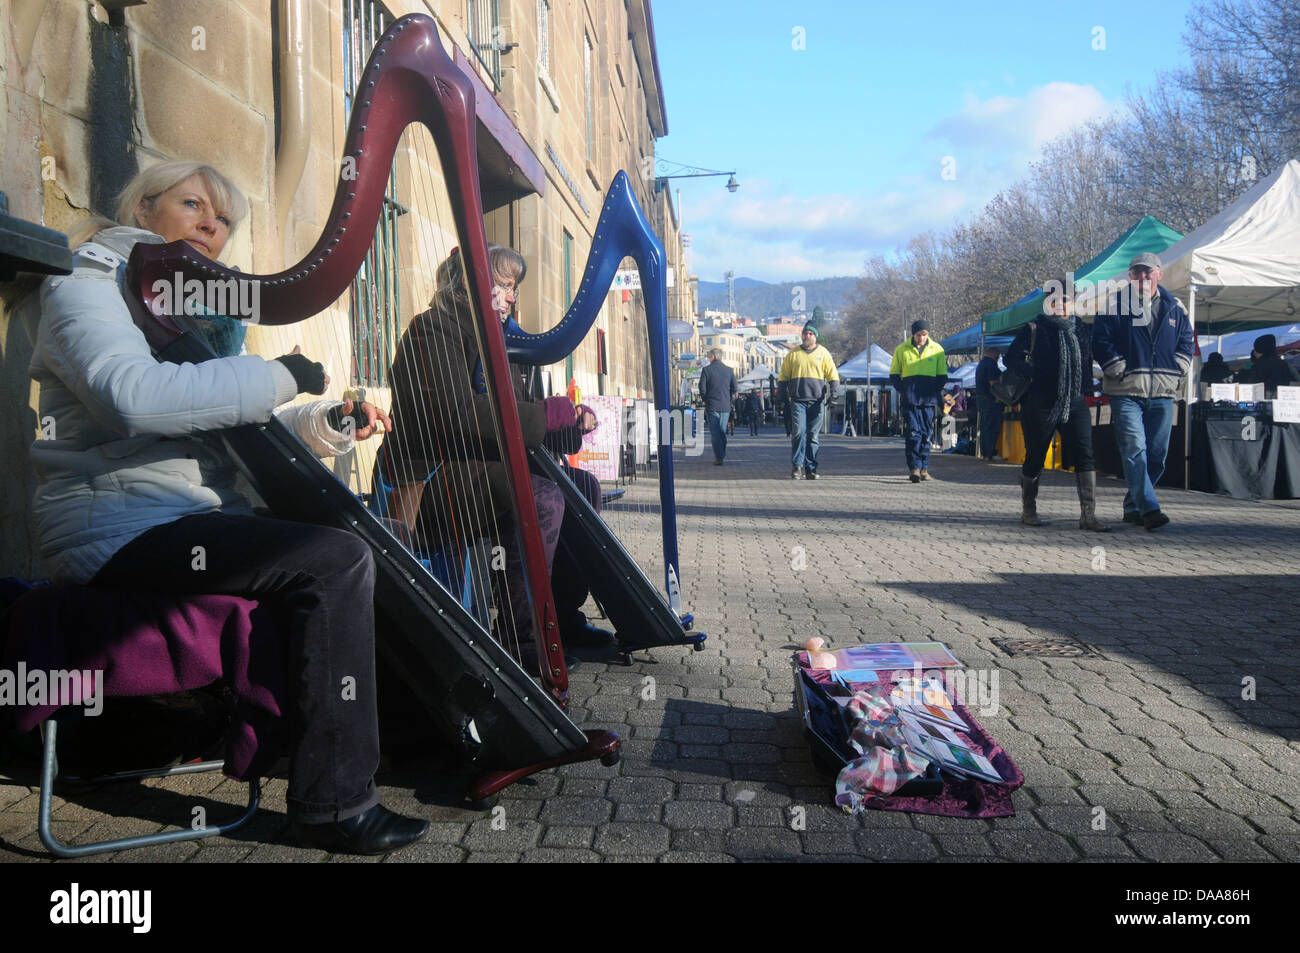 Les femmes de la rue de harpes jouant sur la rue, Salamanque, marchés, Hobart, Tasmanie, Australie. Pas de monsieur ou PR Banque D'Images